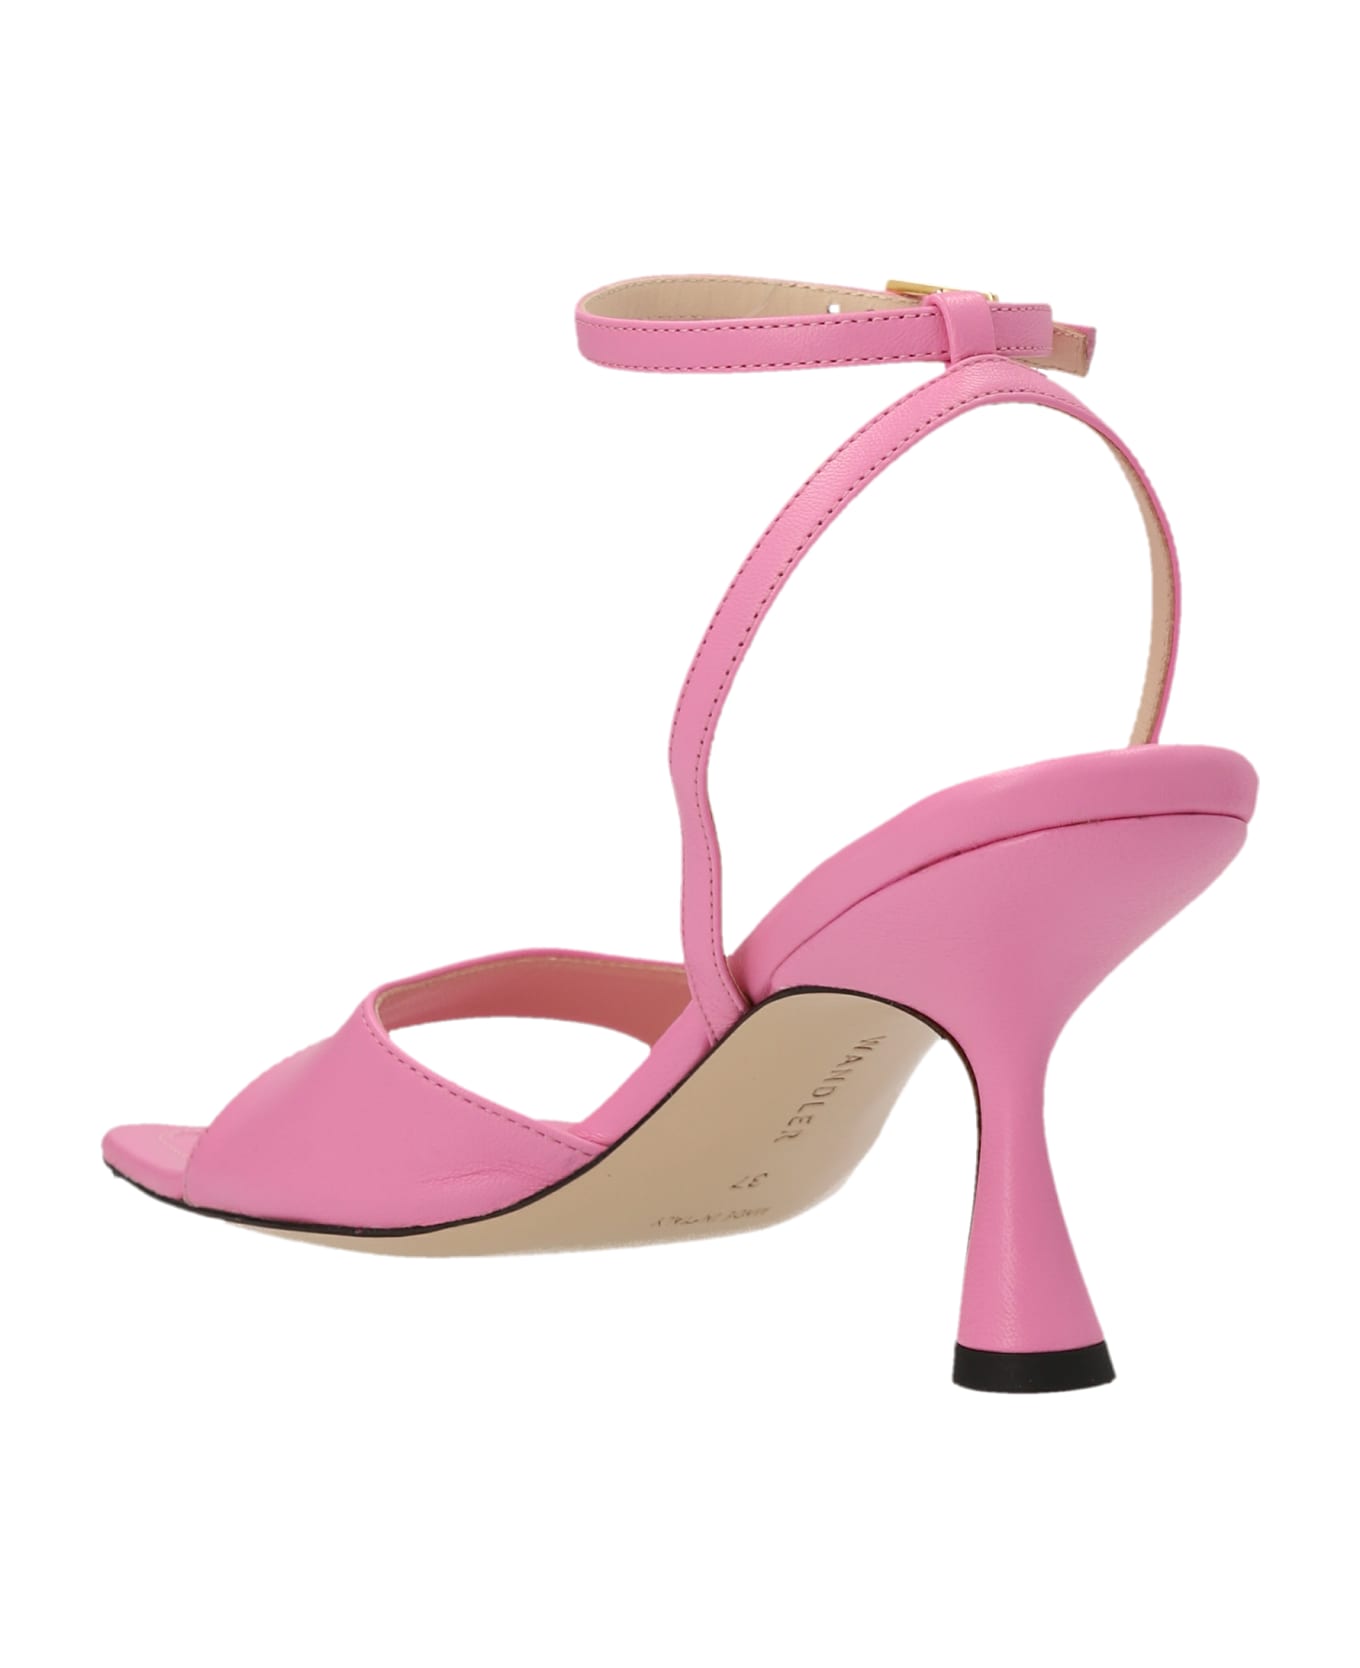 Wandler 'julio' Sandals - Pink